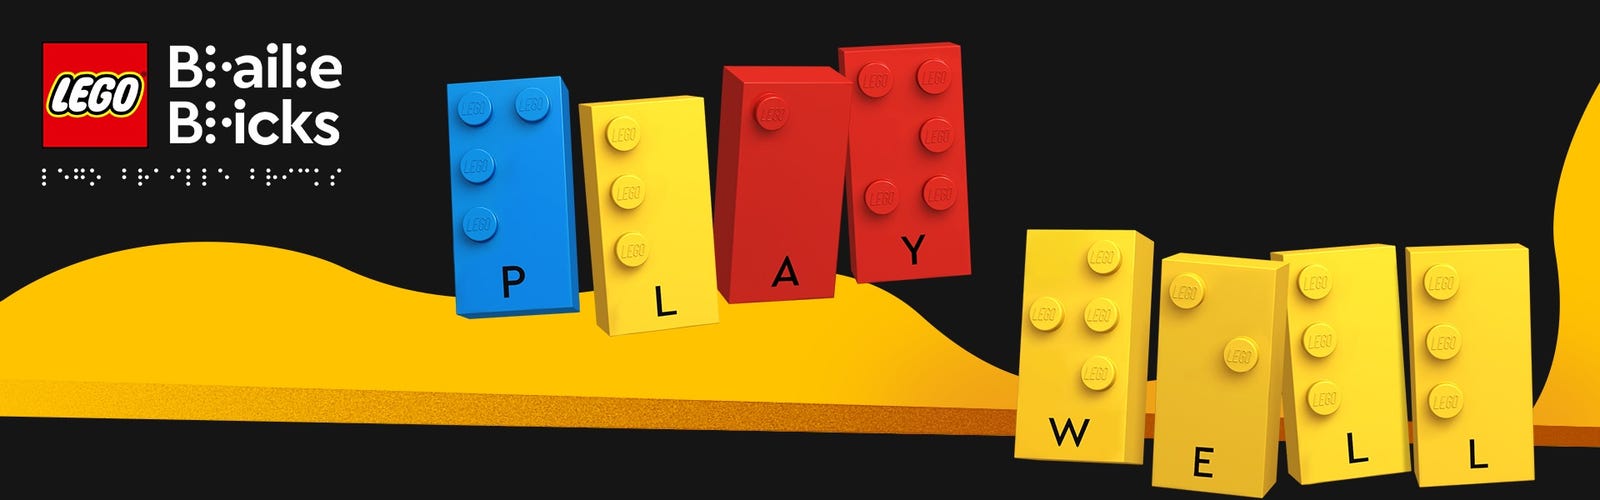 Lego lance une grande nouveauté : des briques en braille pour les enfants